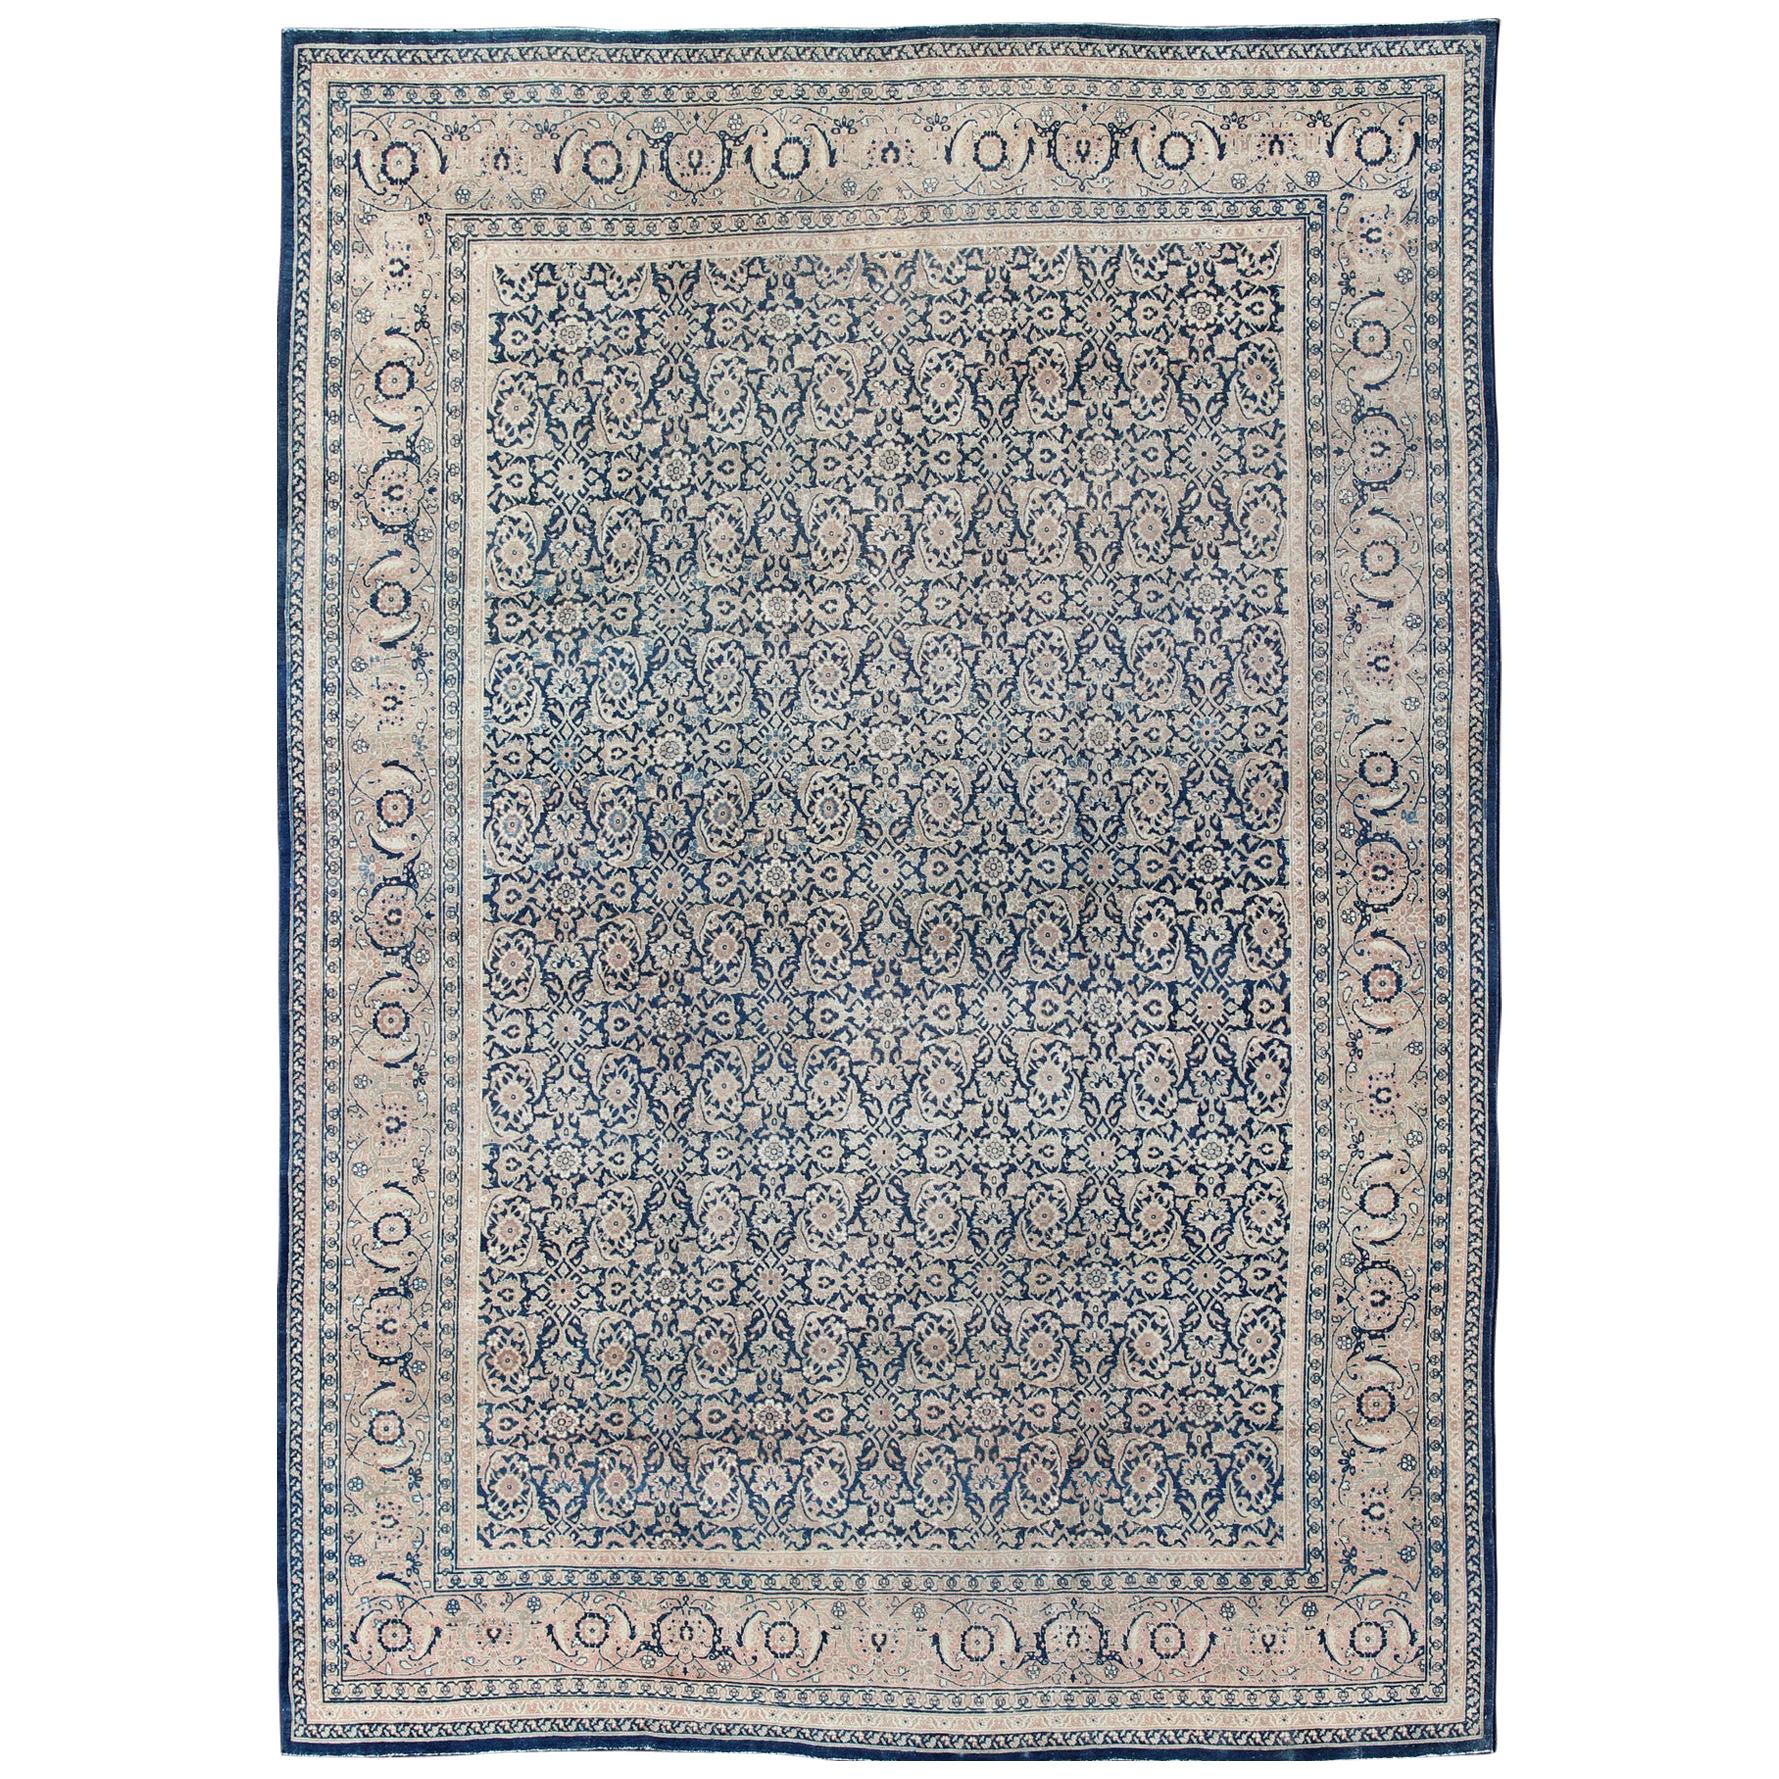 Antique Persian Tabriz Carpet with Geometric Herati Design in Dark Blue Tones